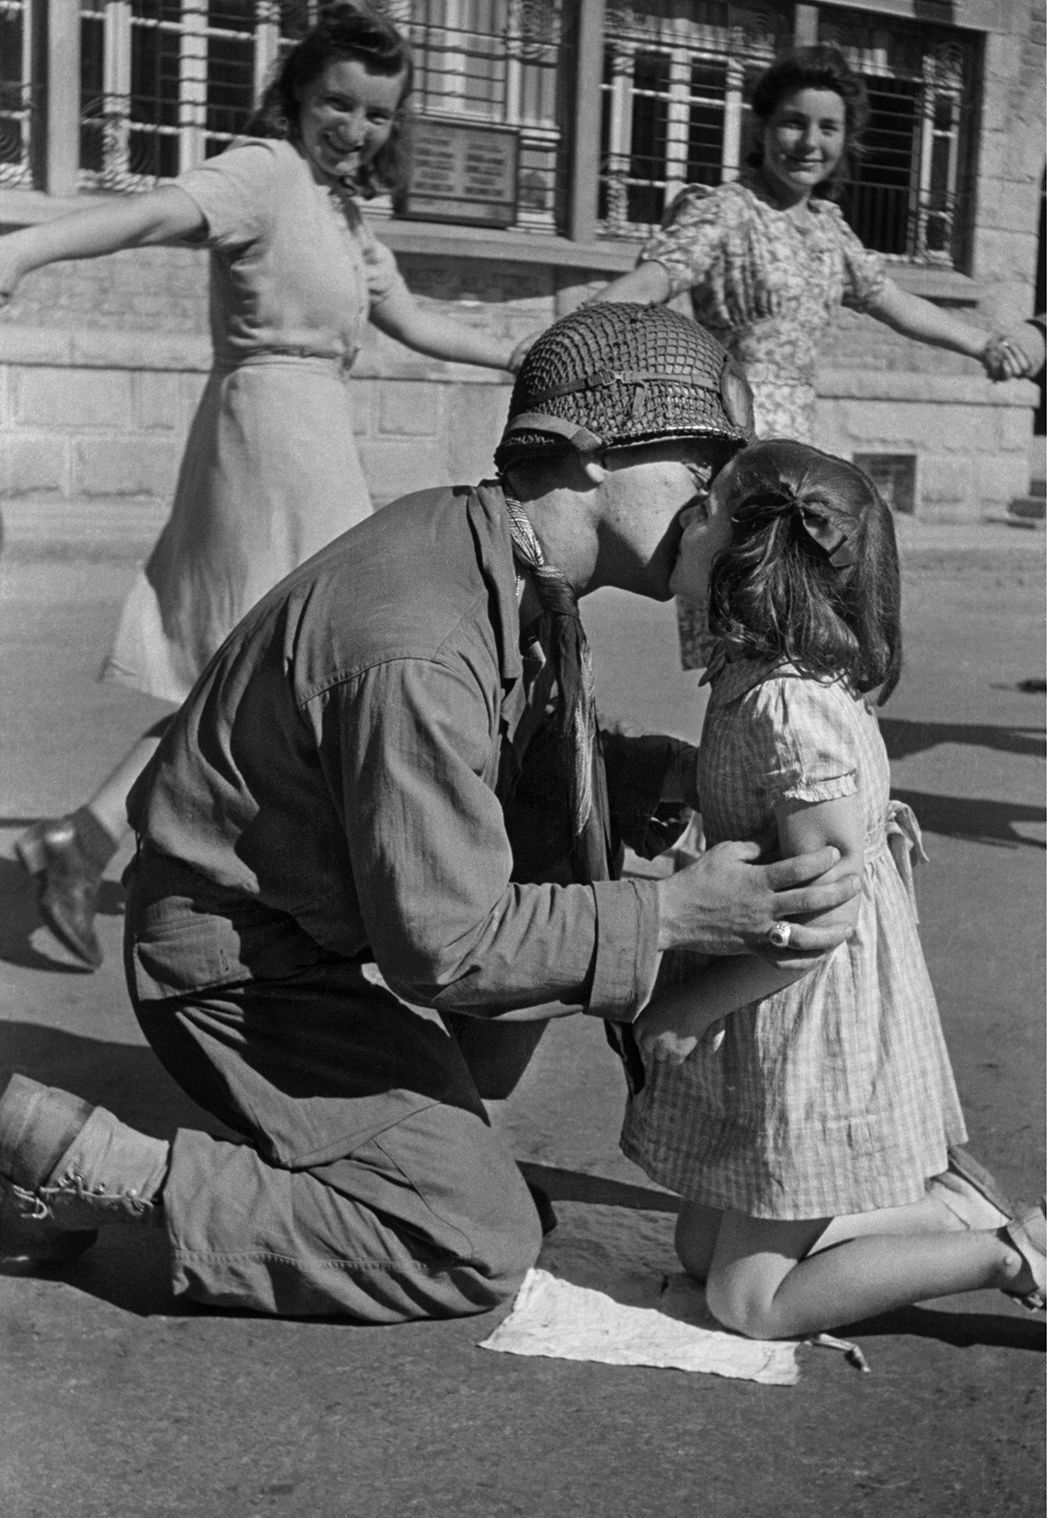 Το «Φιλί της Απελευθέρωσης»: ο λοχίας Τζιν Κοστάντζο γονατίζει για να φιλήσει ένα κοριτσάκι, μέσα στους αυθόρμητους πανηγυρισμούς που λαμβάνουν χώρα στην κεντρική πλατεία της γαλλικής πόλης Σεν Μπριάκ, τον Αύγουστο του 1944